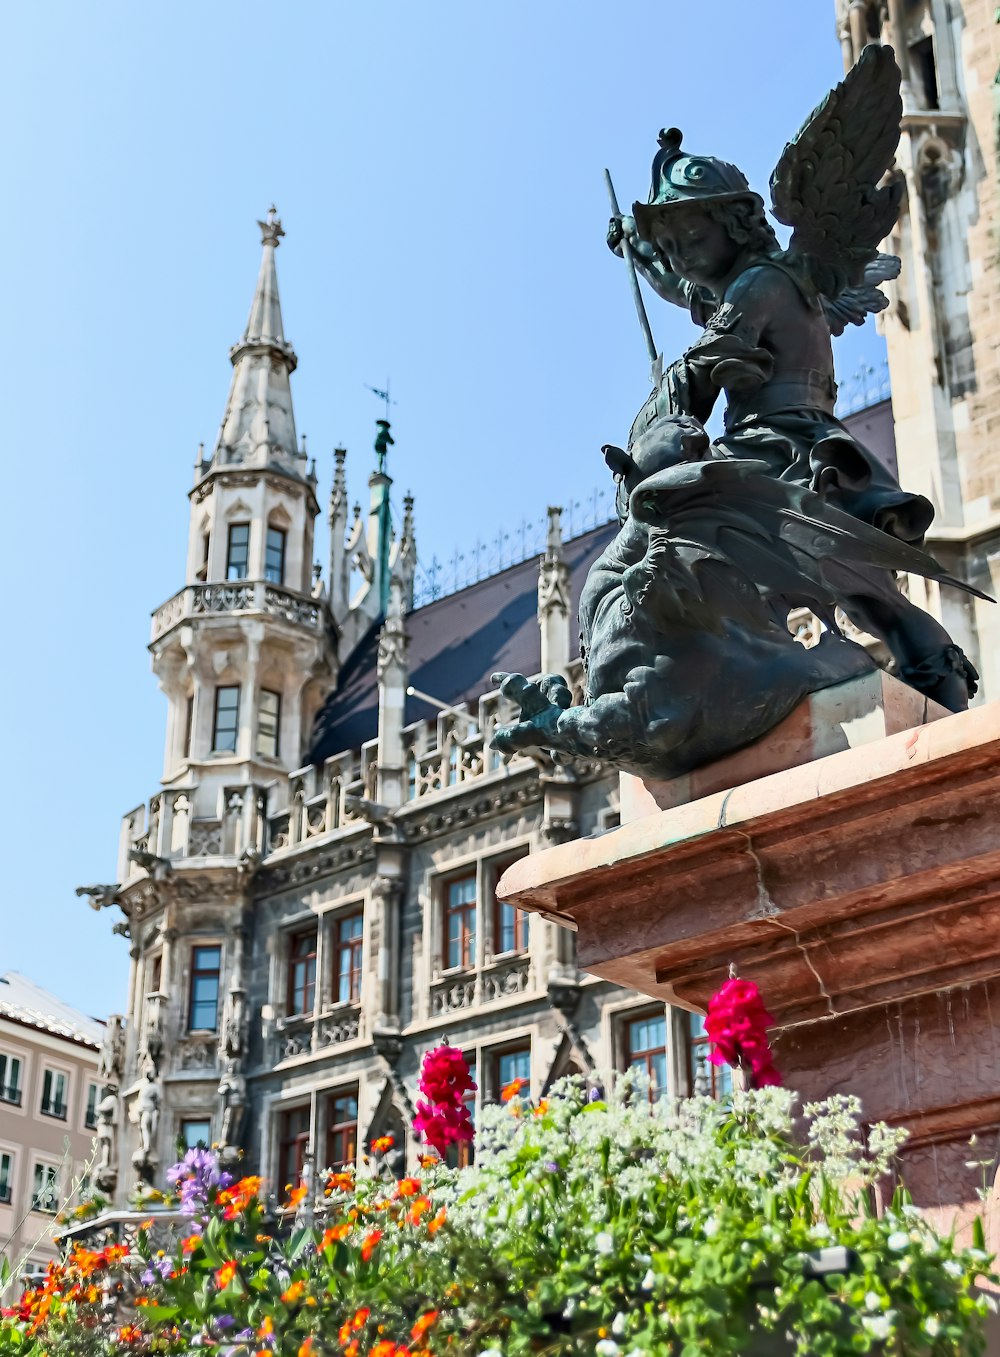 Blumen vor schwarzer Statue und Gebäude